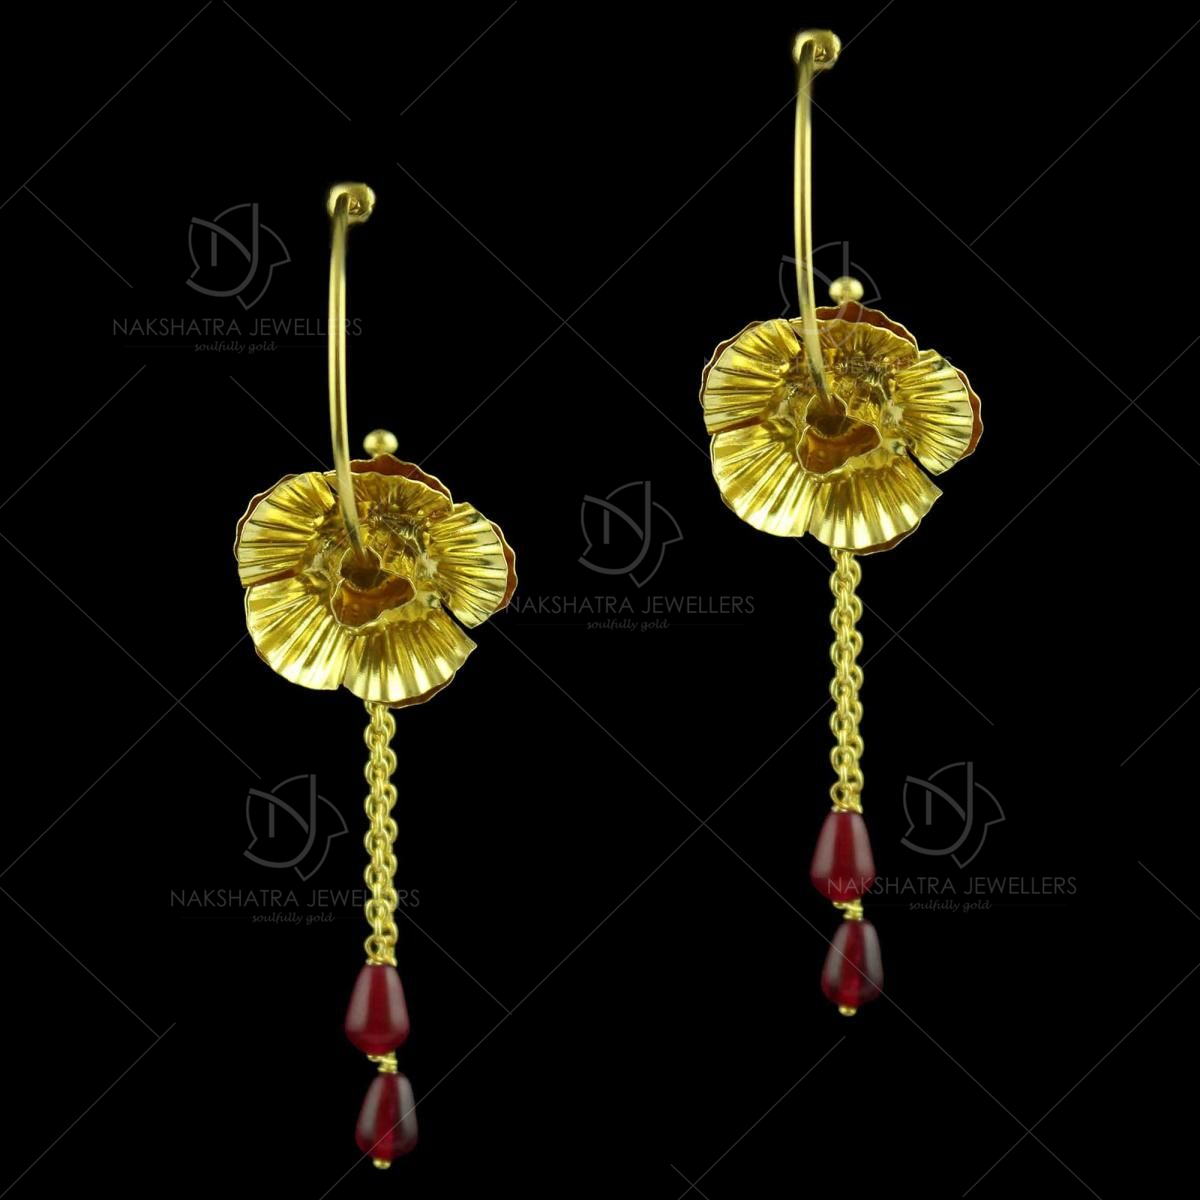 22K Gold 'Detachable' Drop Earrings For Women - 235-GER15009 in 3.300 Grams